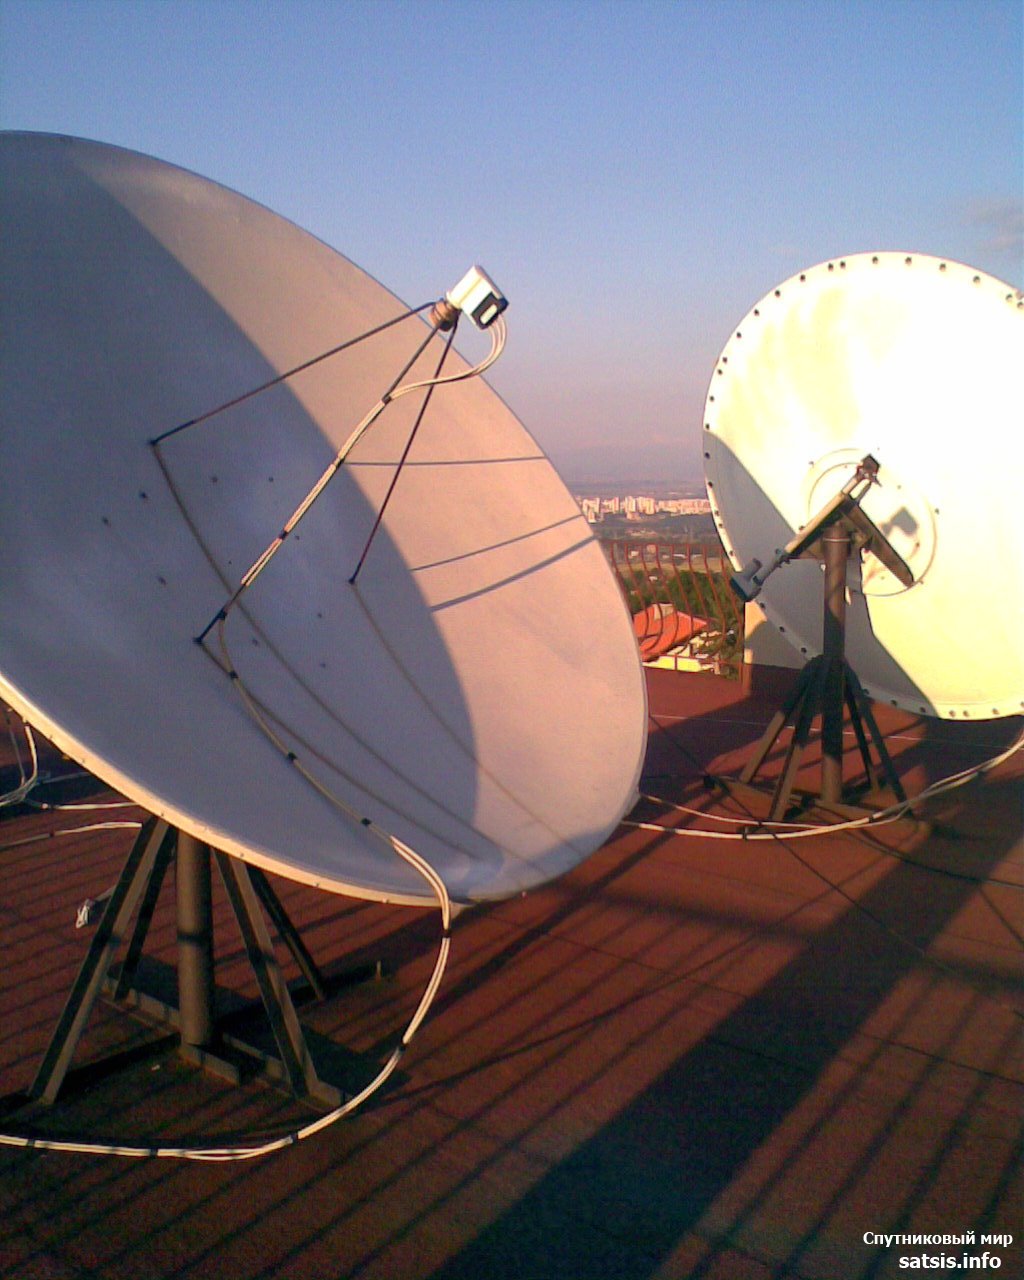 Новости спутникового телевидения на сегодня. Спутниковая тарелка Орион. Спутниковая тарелка Старлинк. Большая параболическая антенна. Огромная спутниковая тарелка.